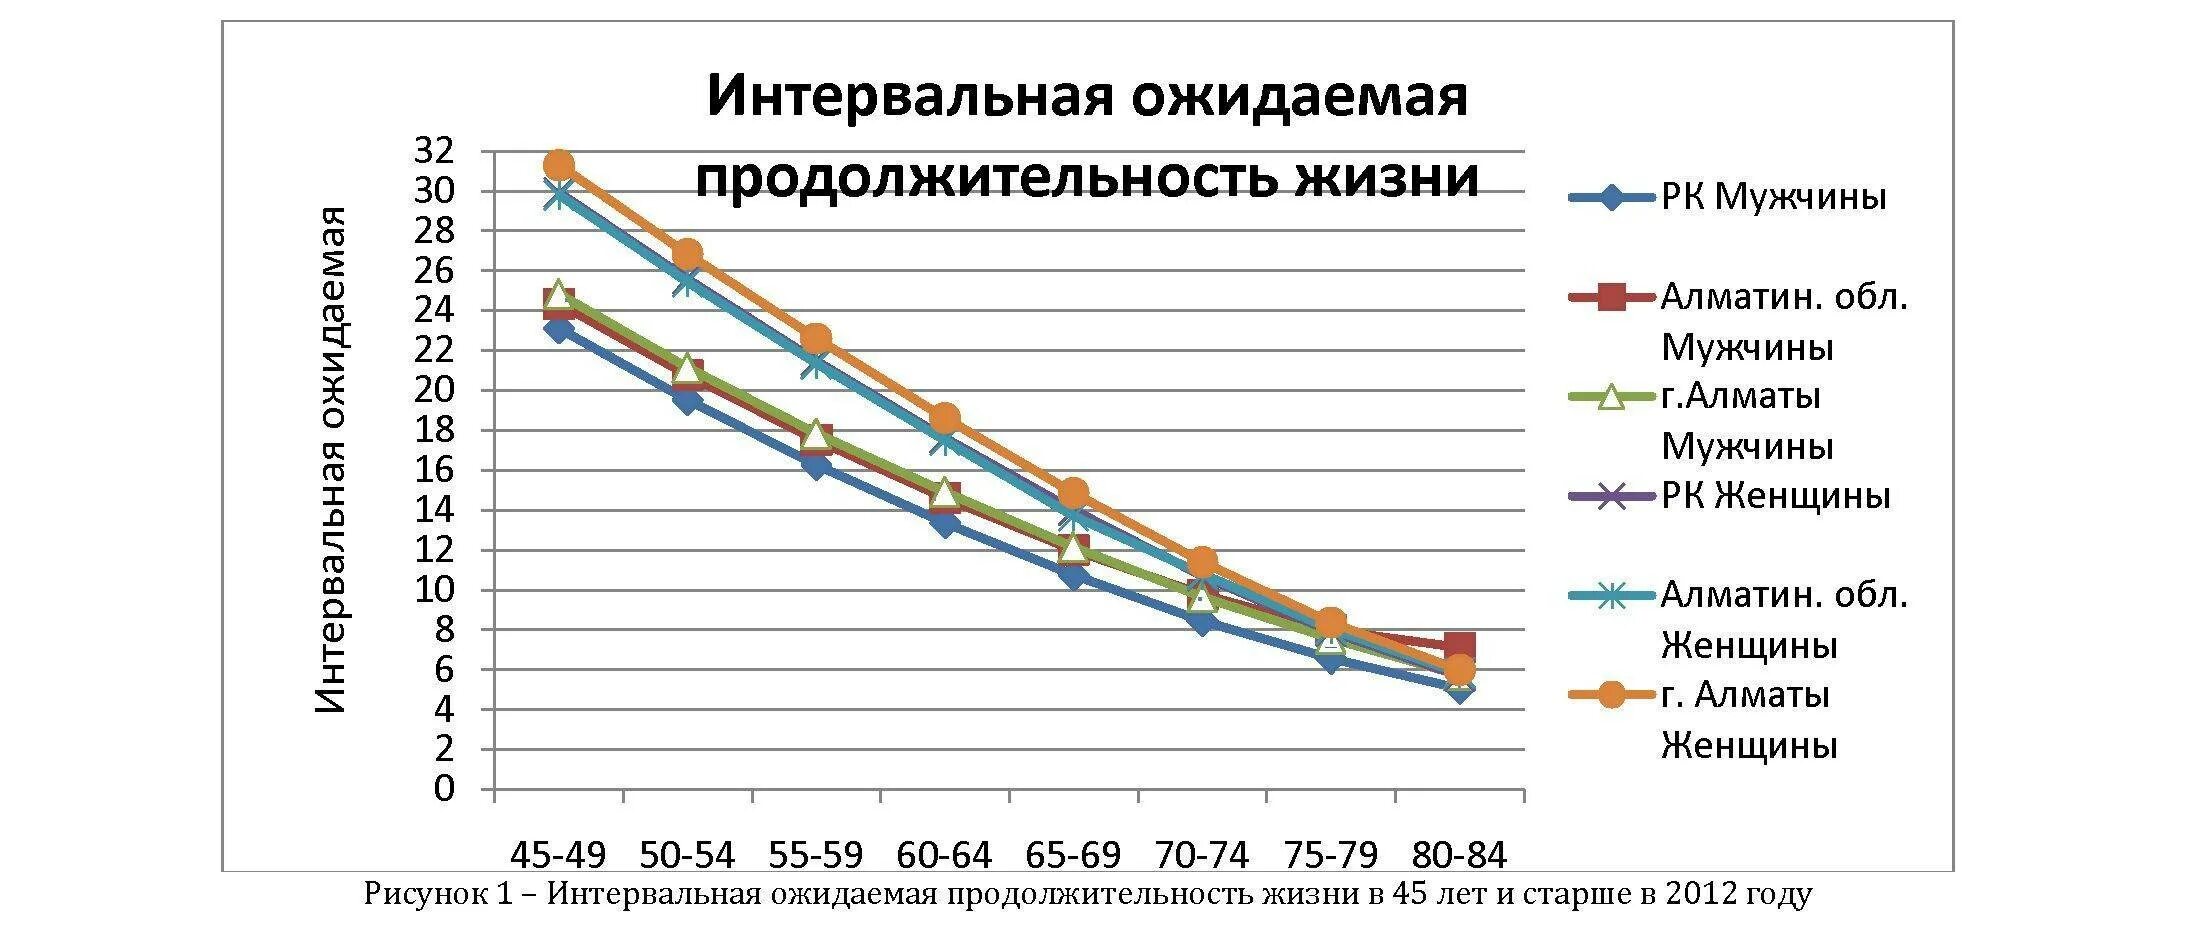 Увеличение продолжительности жизни геншин. Ожидаемая Продолжительность жизни. Продолжительность жизни мужчин и женщин. Средняя Продолжительность жизни в Казахстане. Увеличение ожидаемой продолжительности жизни.